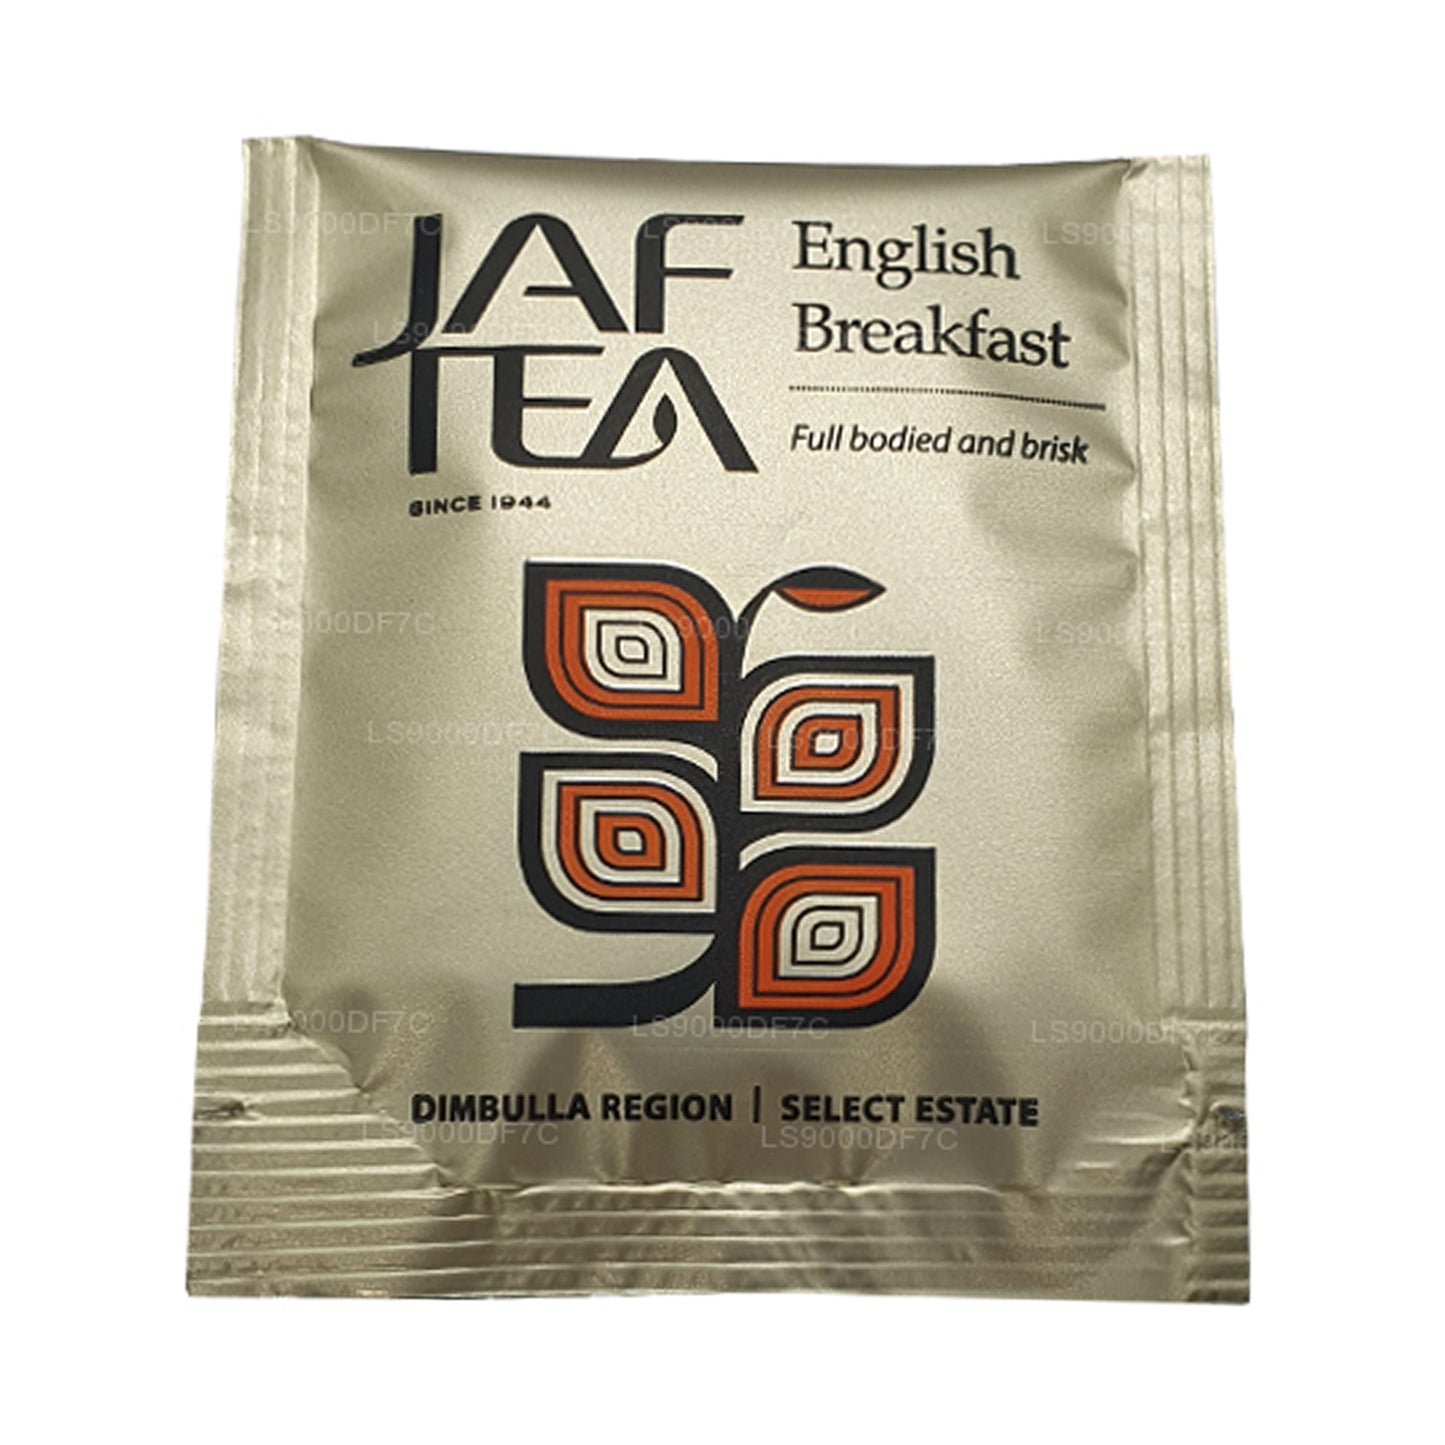 Jaf Tea Pure thee en kruidenthee (145 g) 80 theezakjes